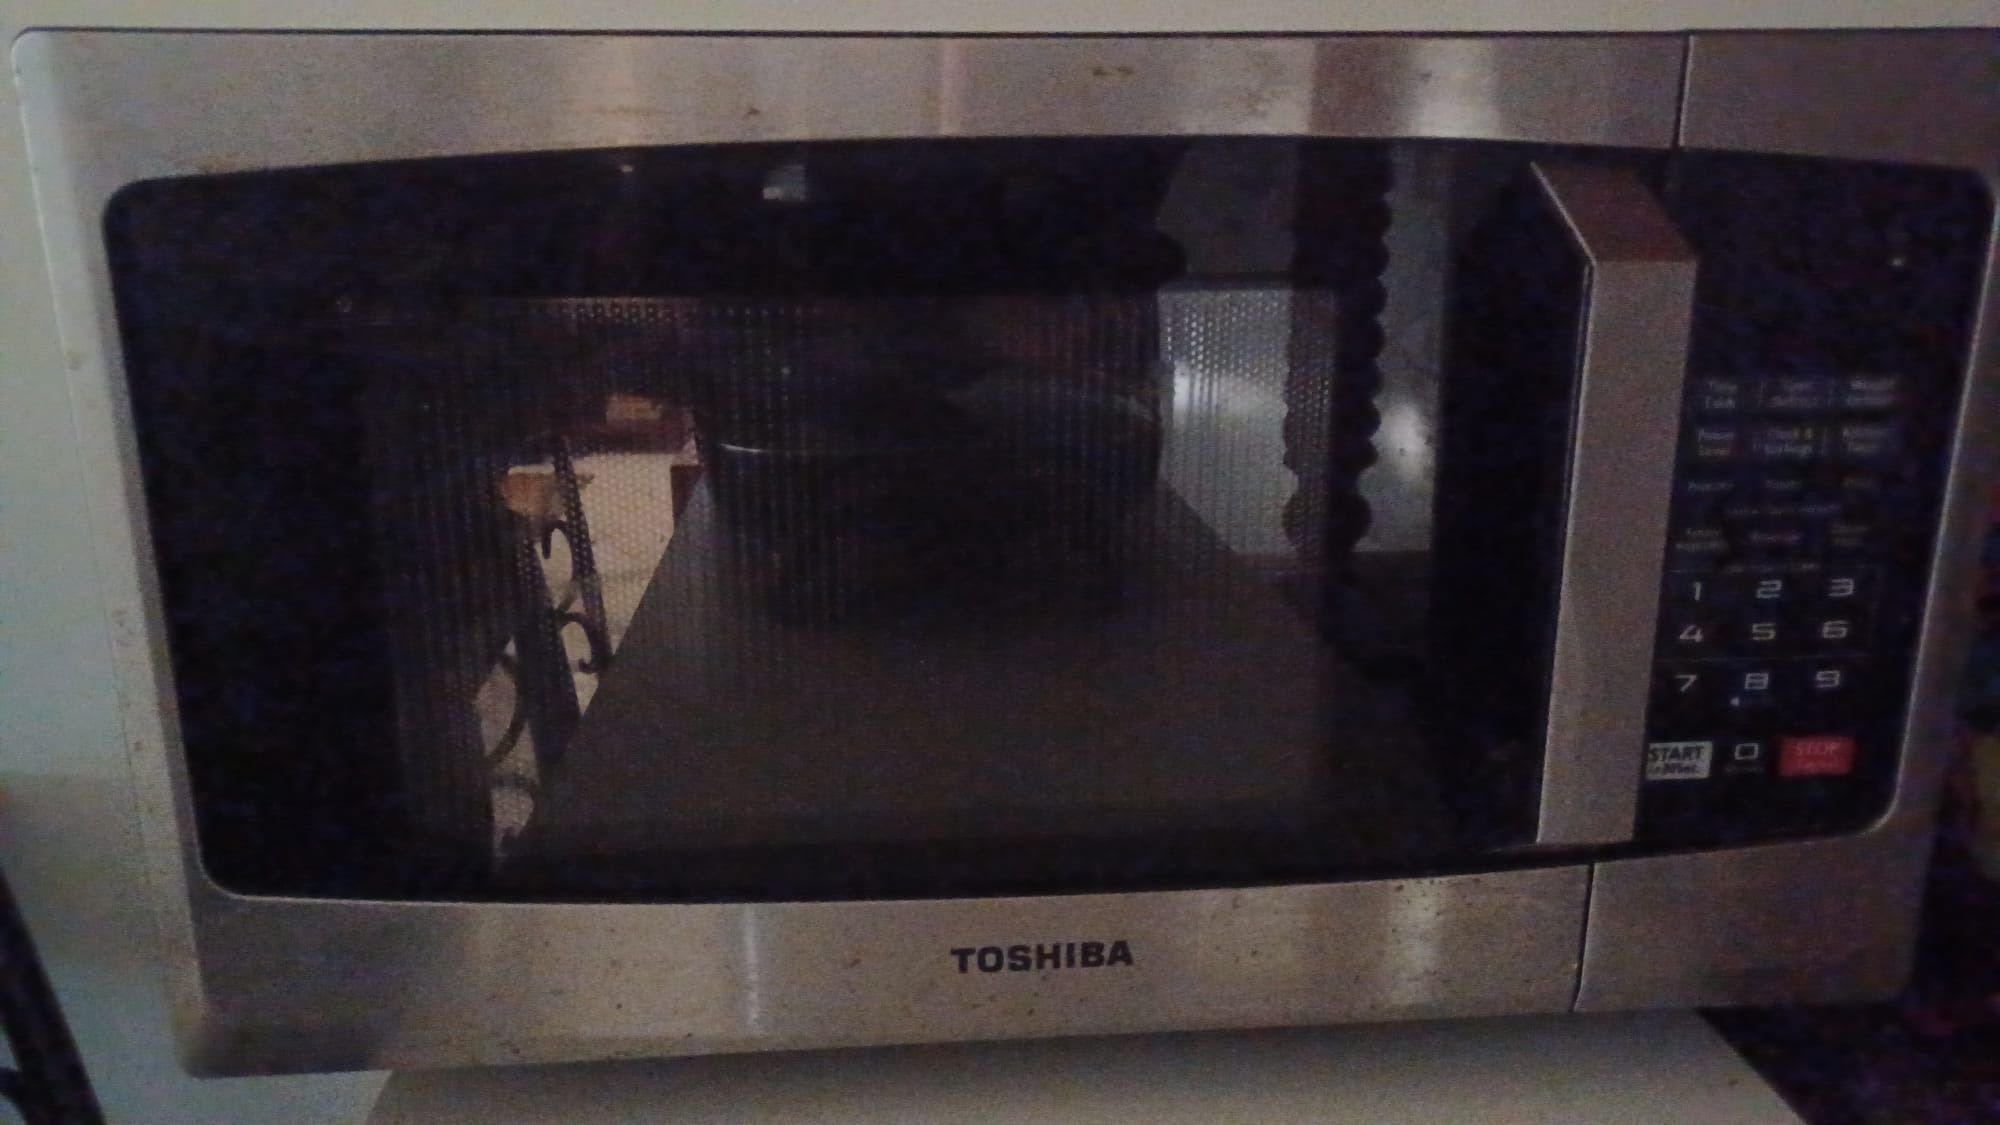 Toshiba microwave Oven